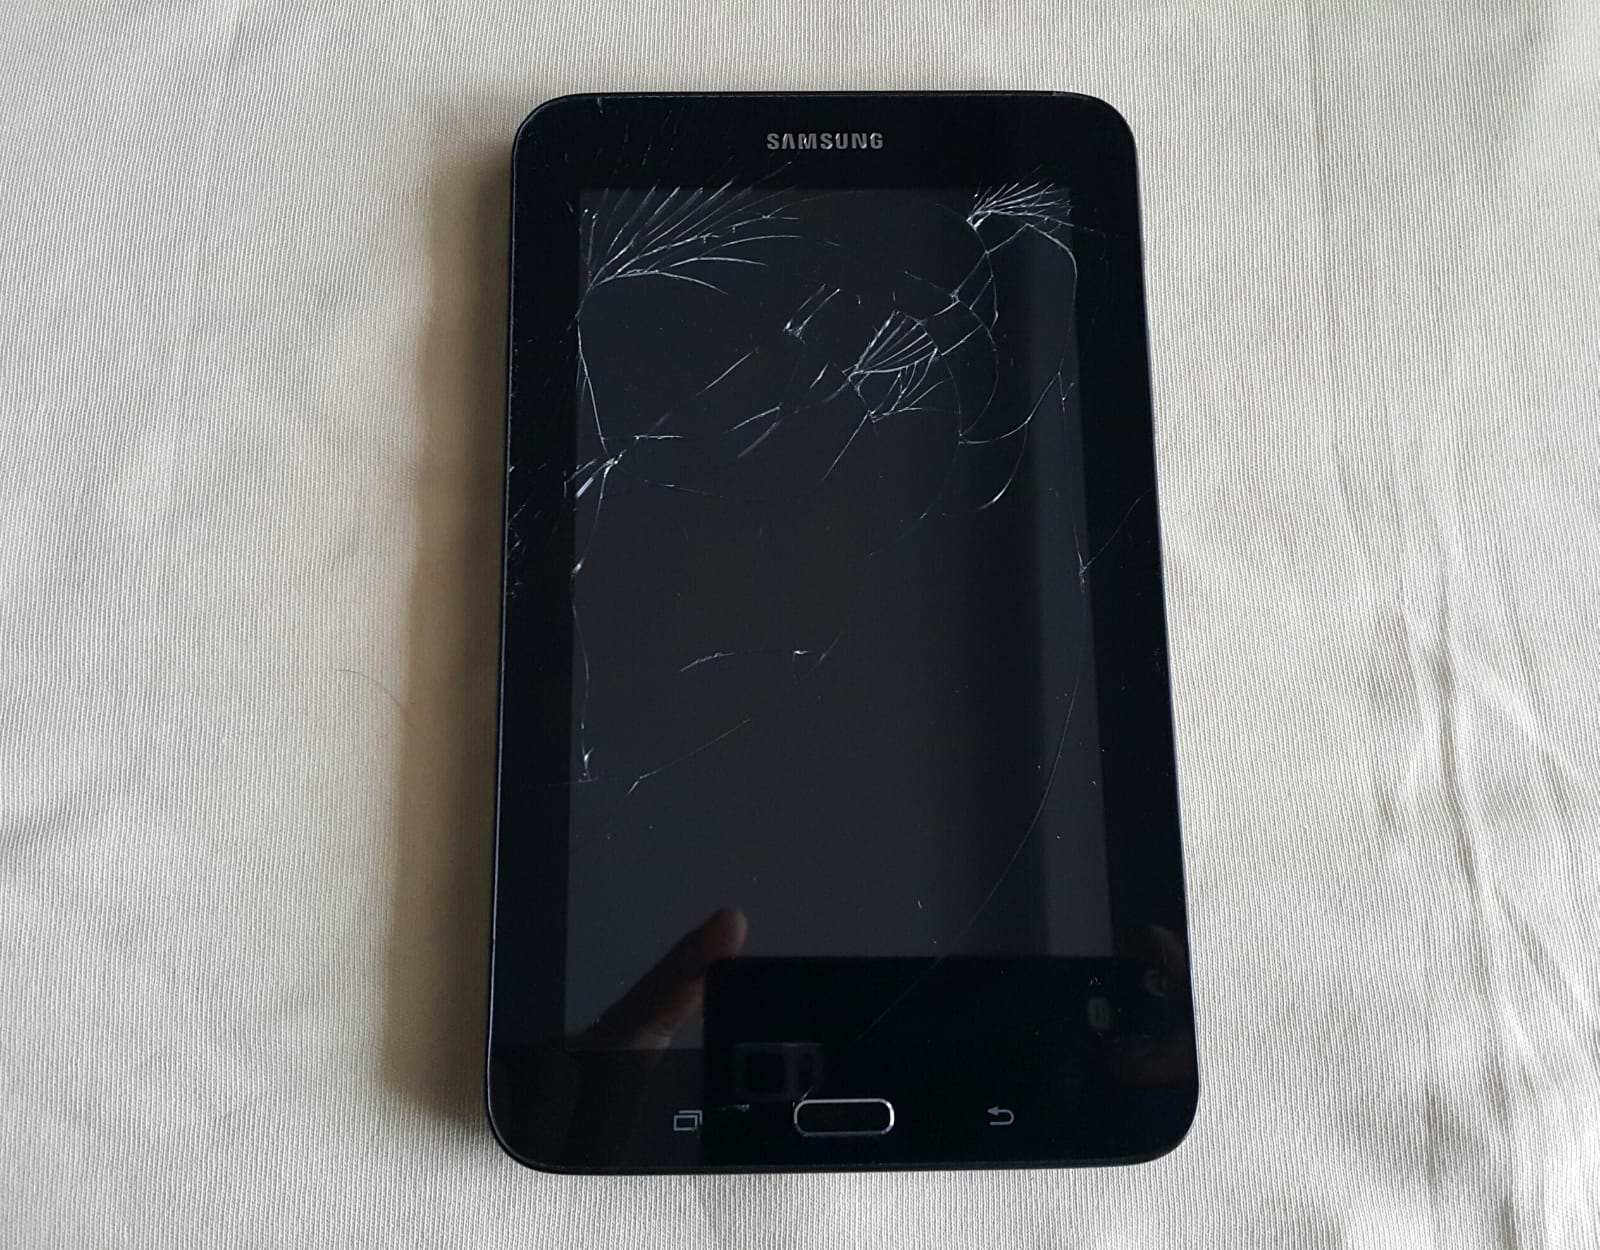 Satılık İkinci El Samsung Galaxy Tab E 8 GB Siyah Tablet